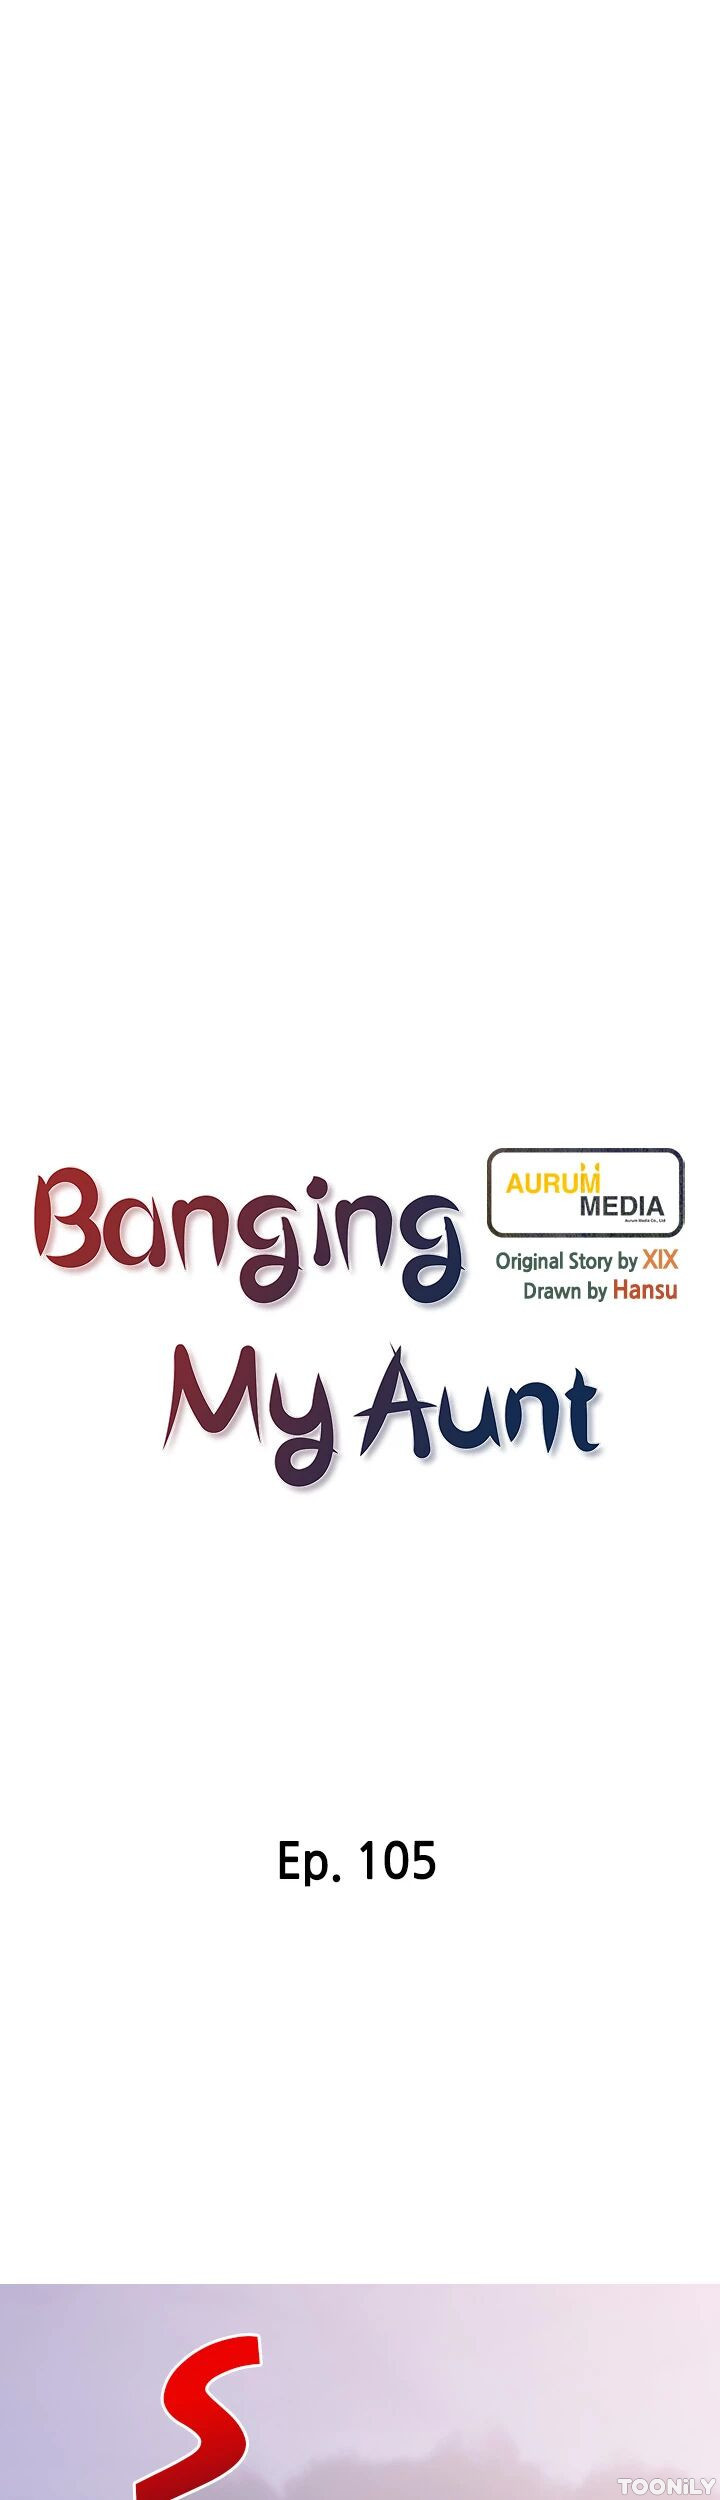 Banging My Aunt image